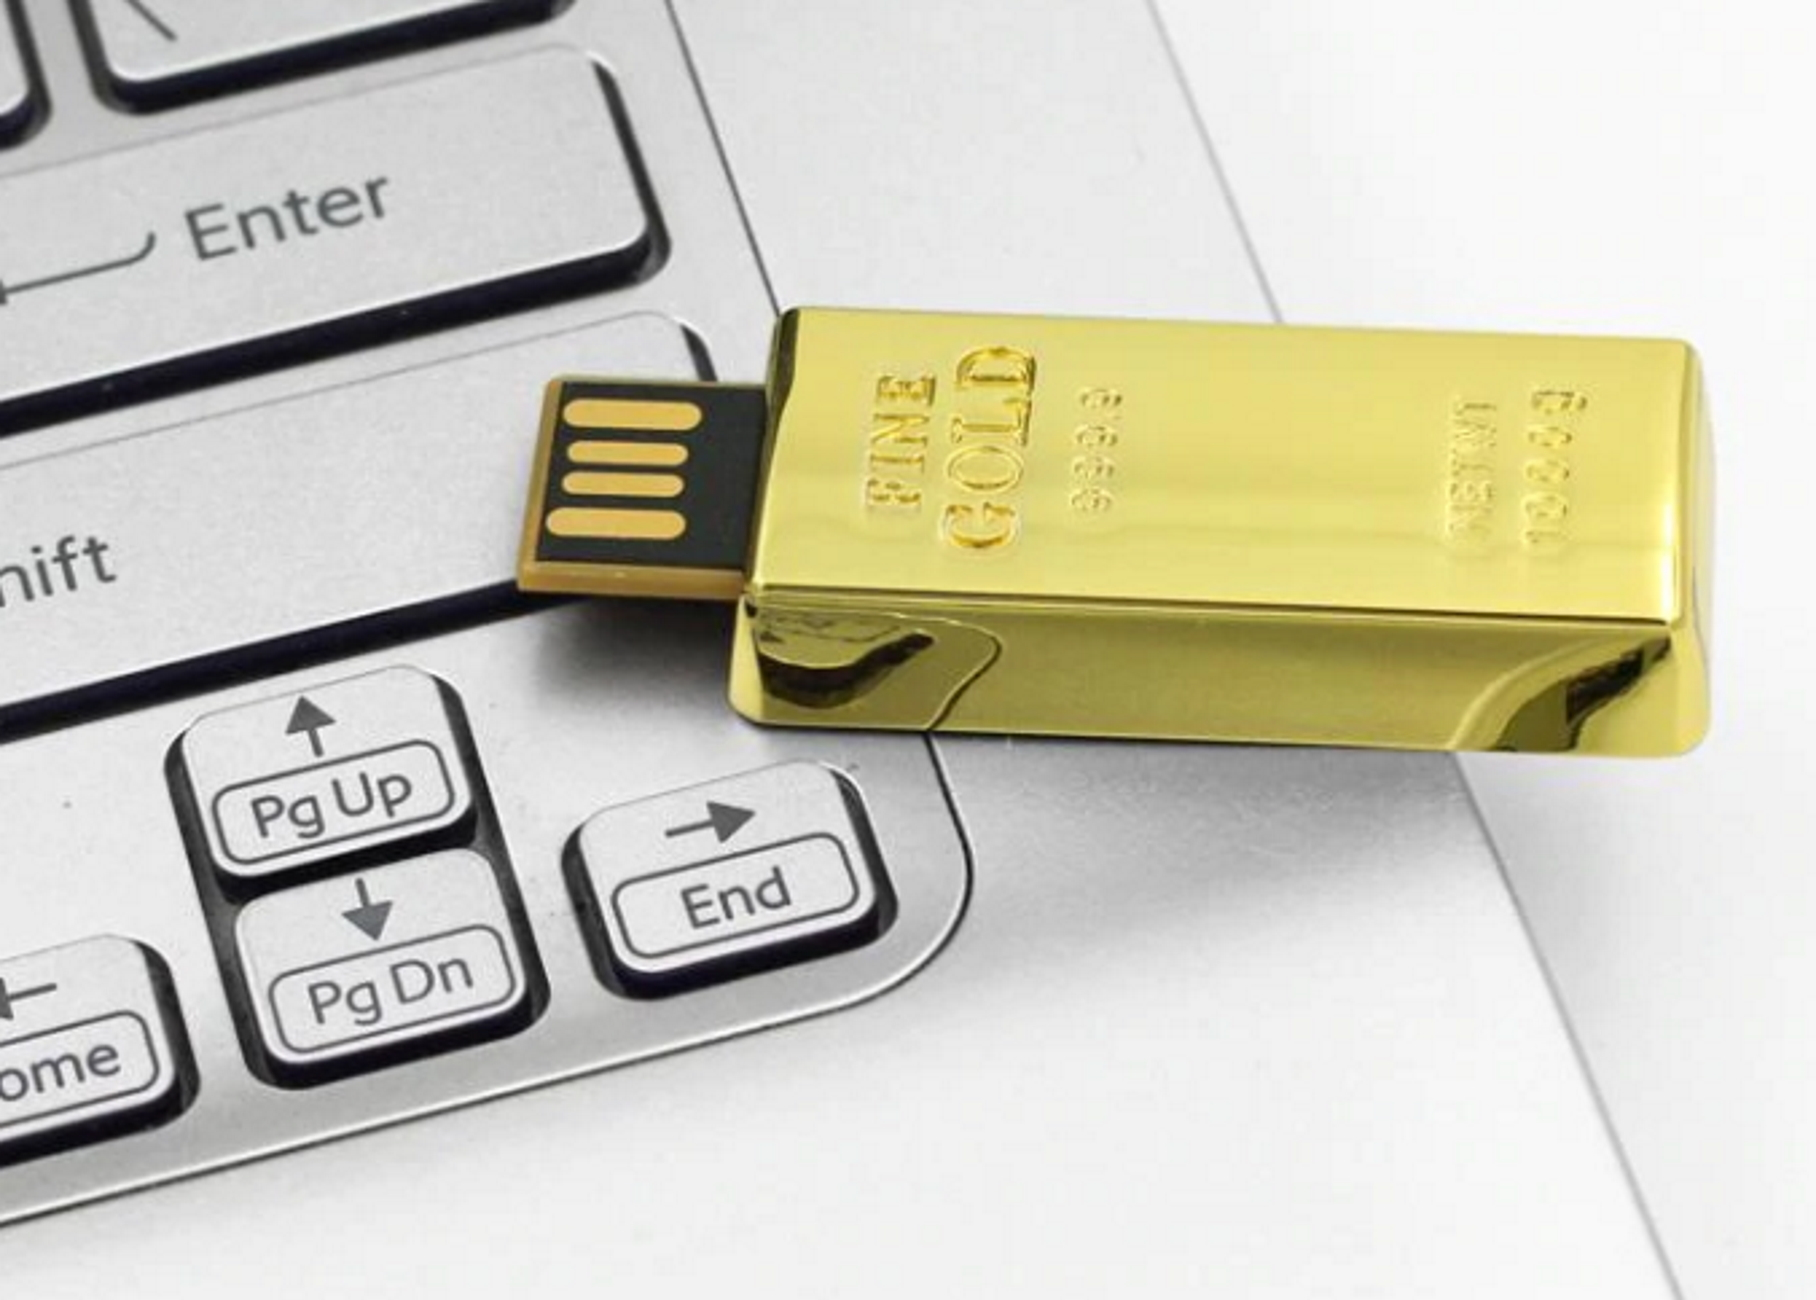 USB GERMANY ® 2 (Gold, Goldbarren USB-Stick GB)